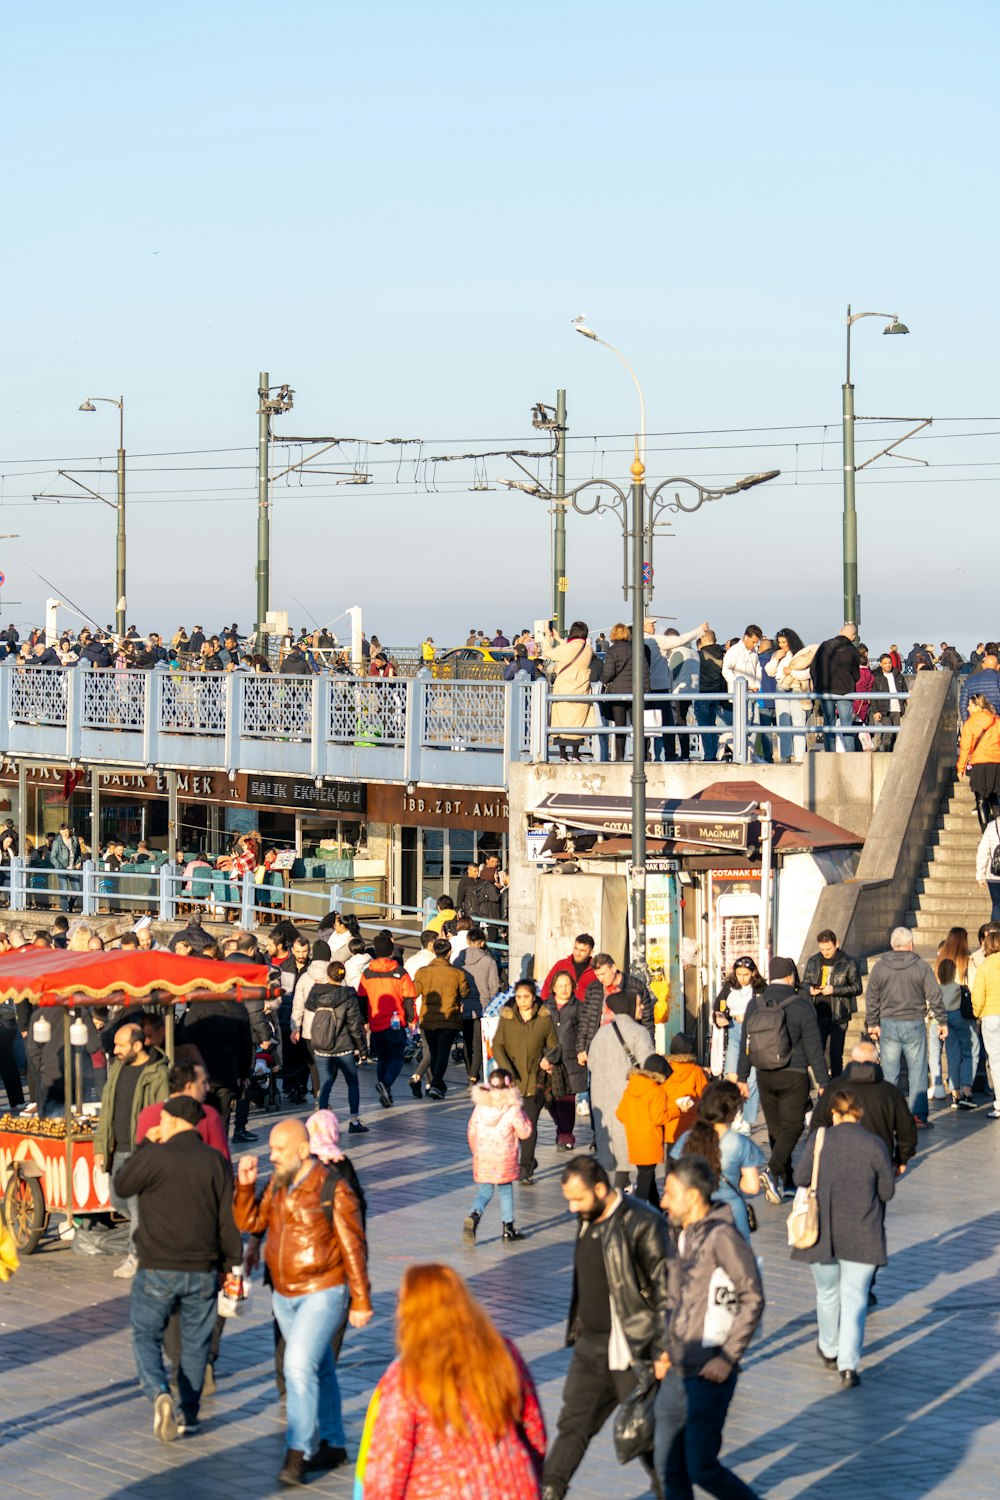 a crowd of people walking across a bridge